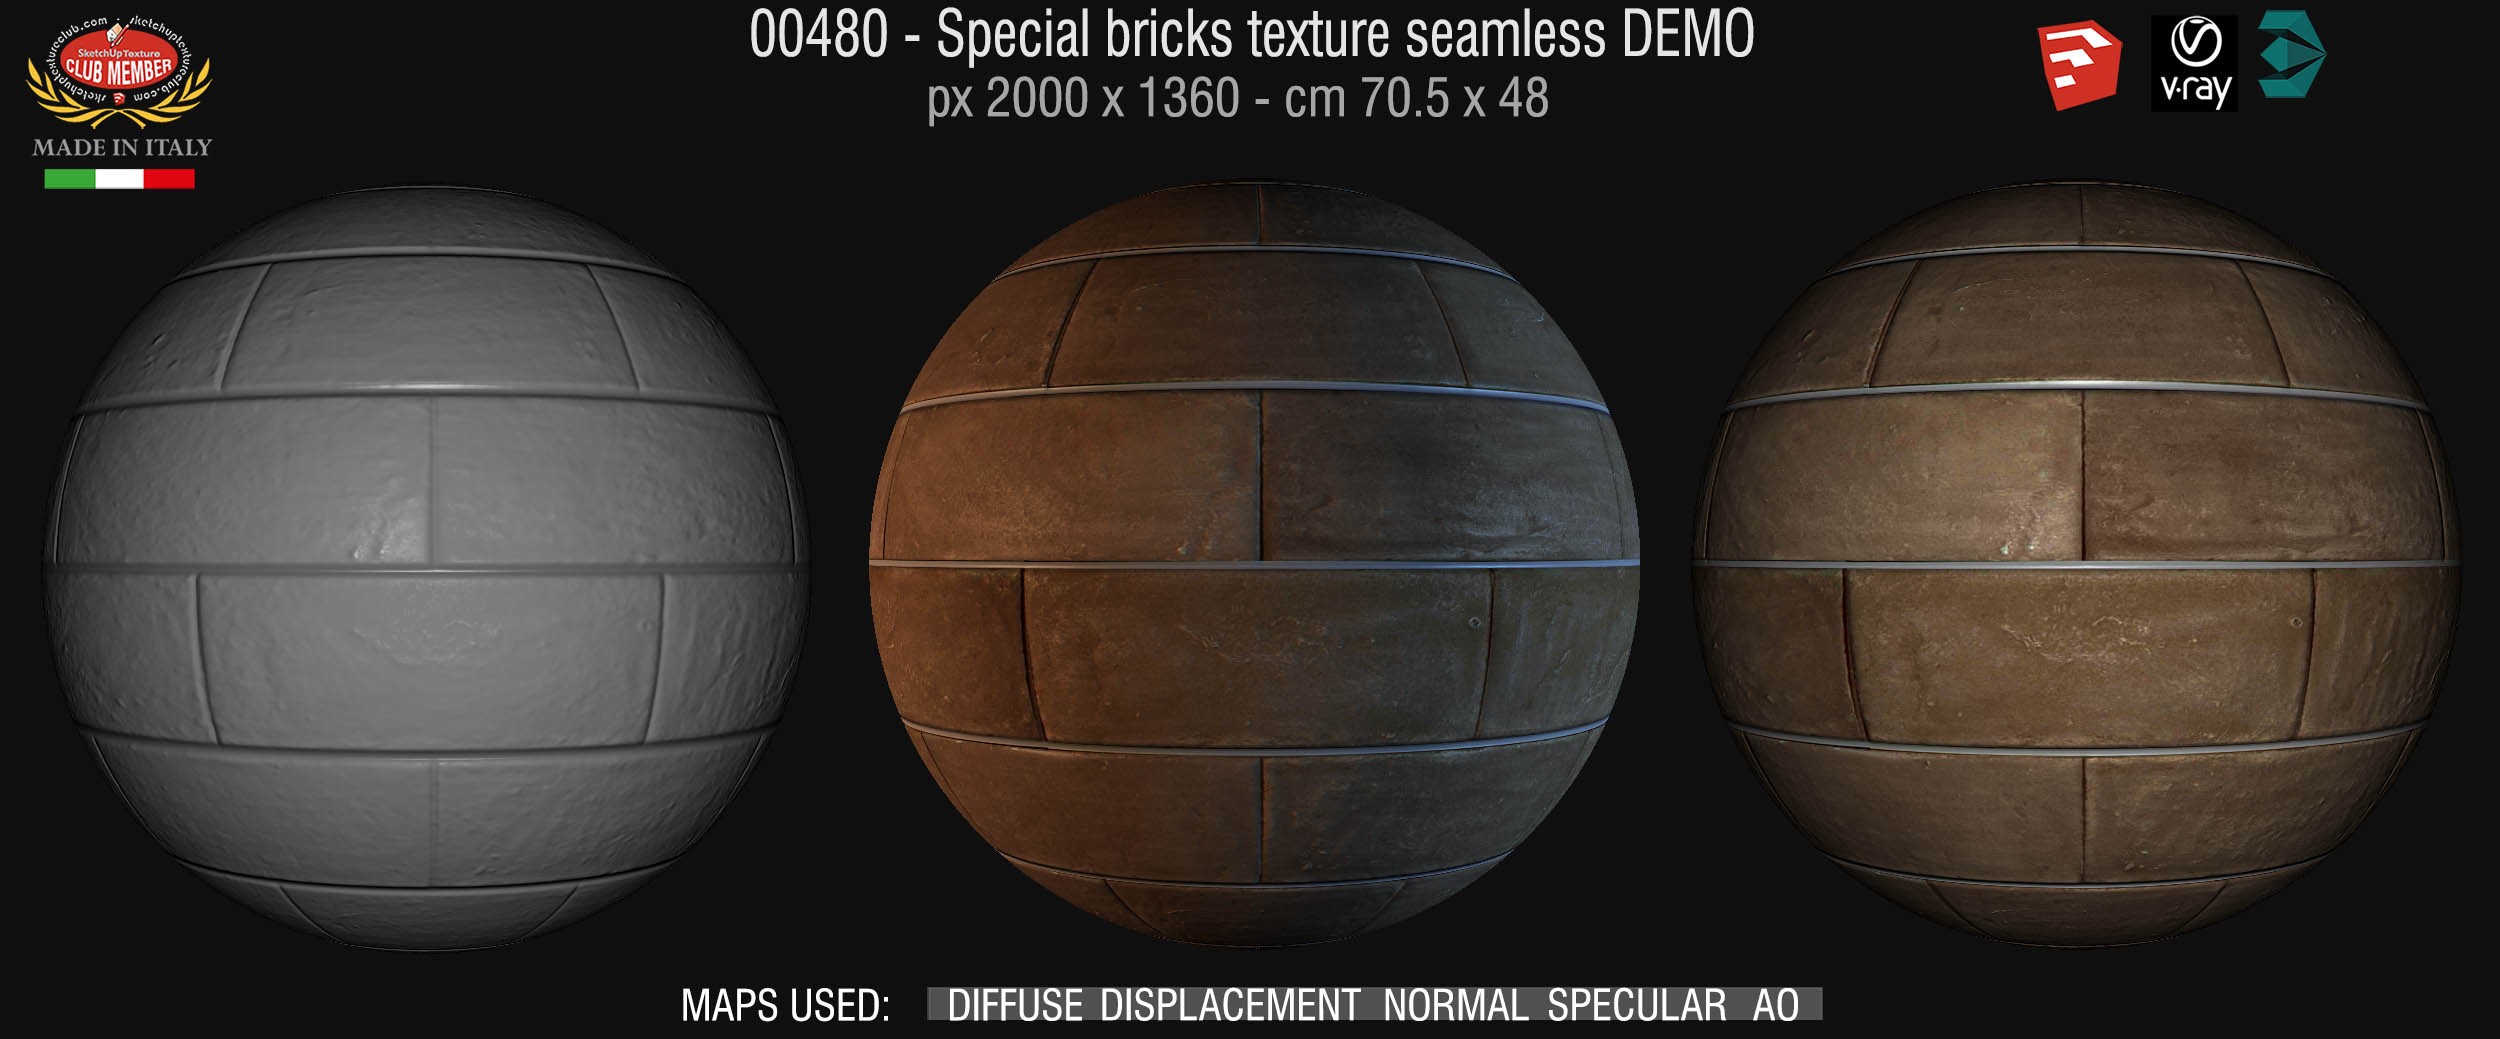 00480 Special bricks texture seamless + maps DEMO